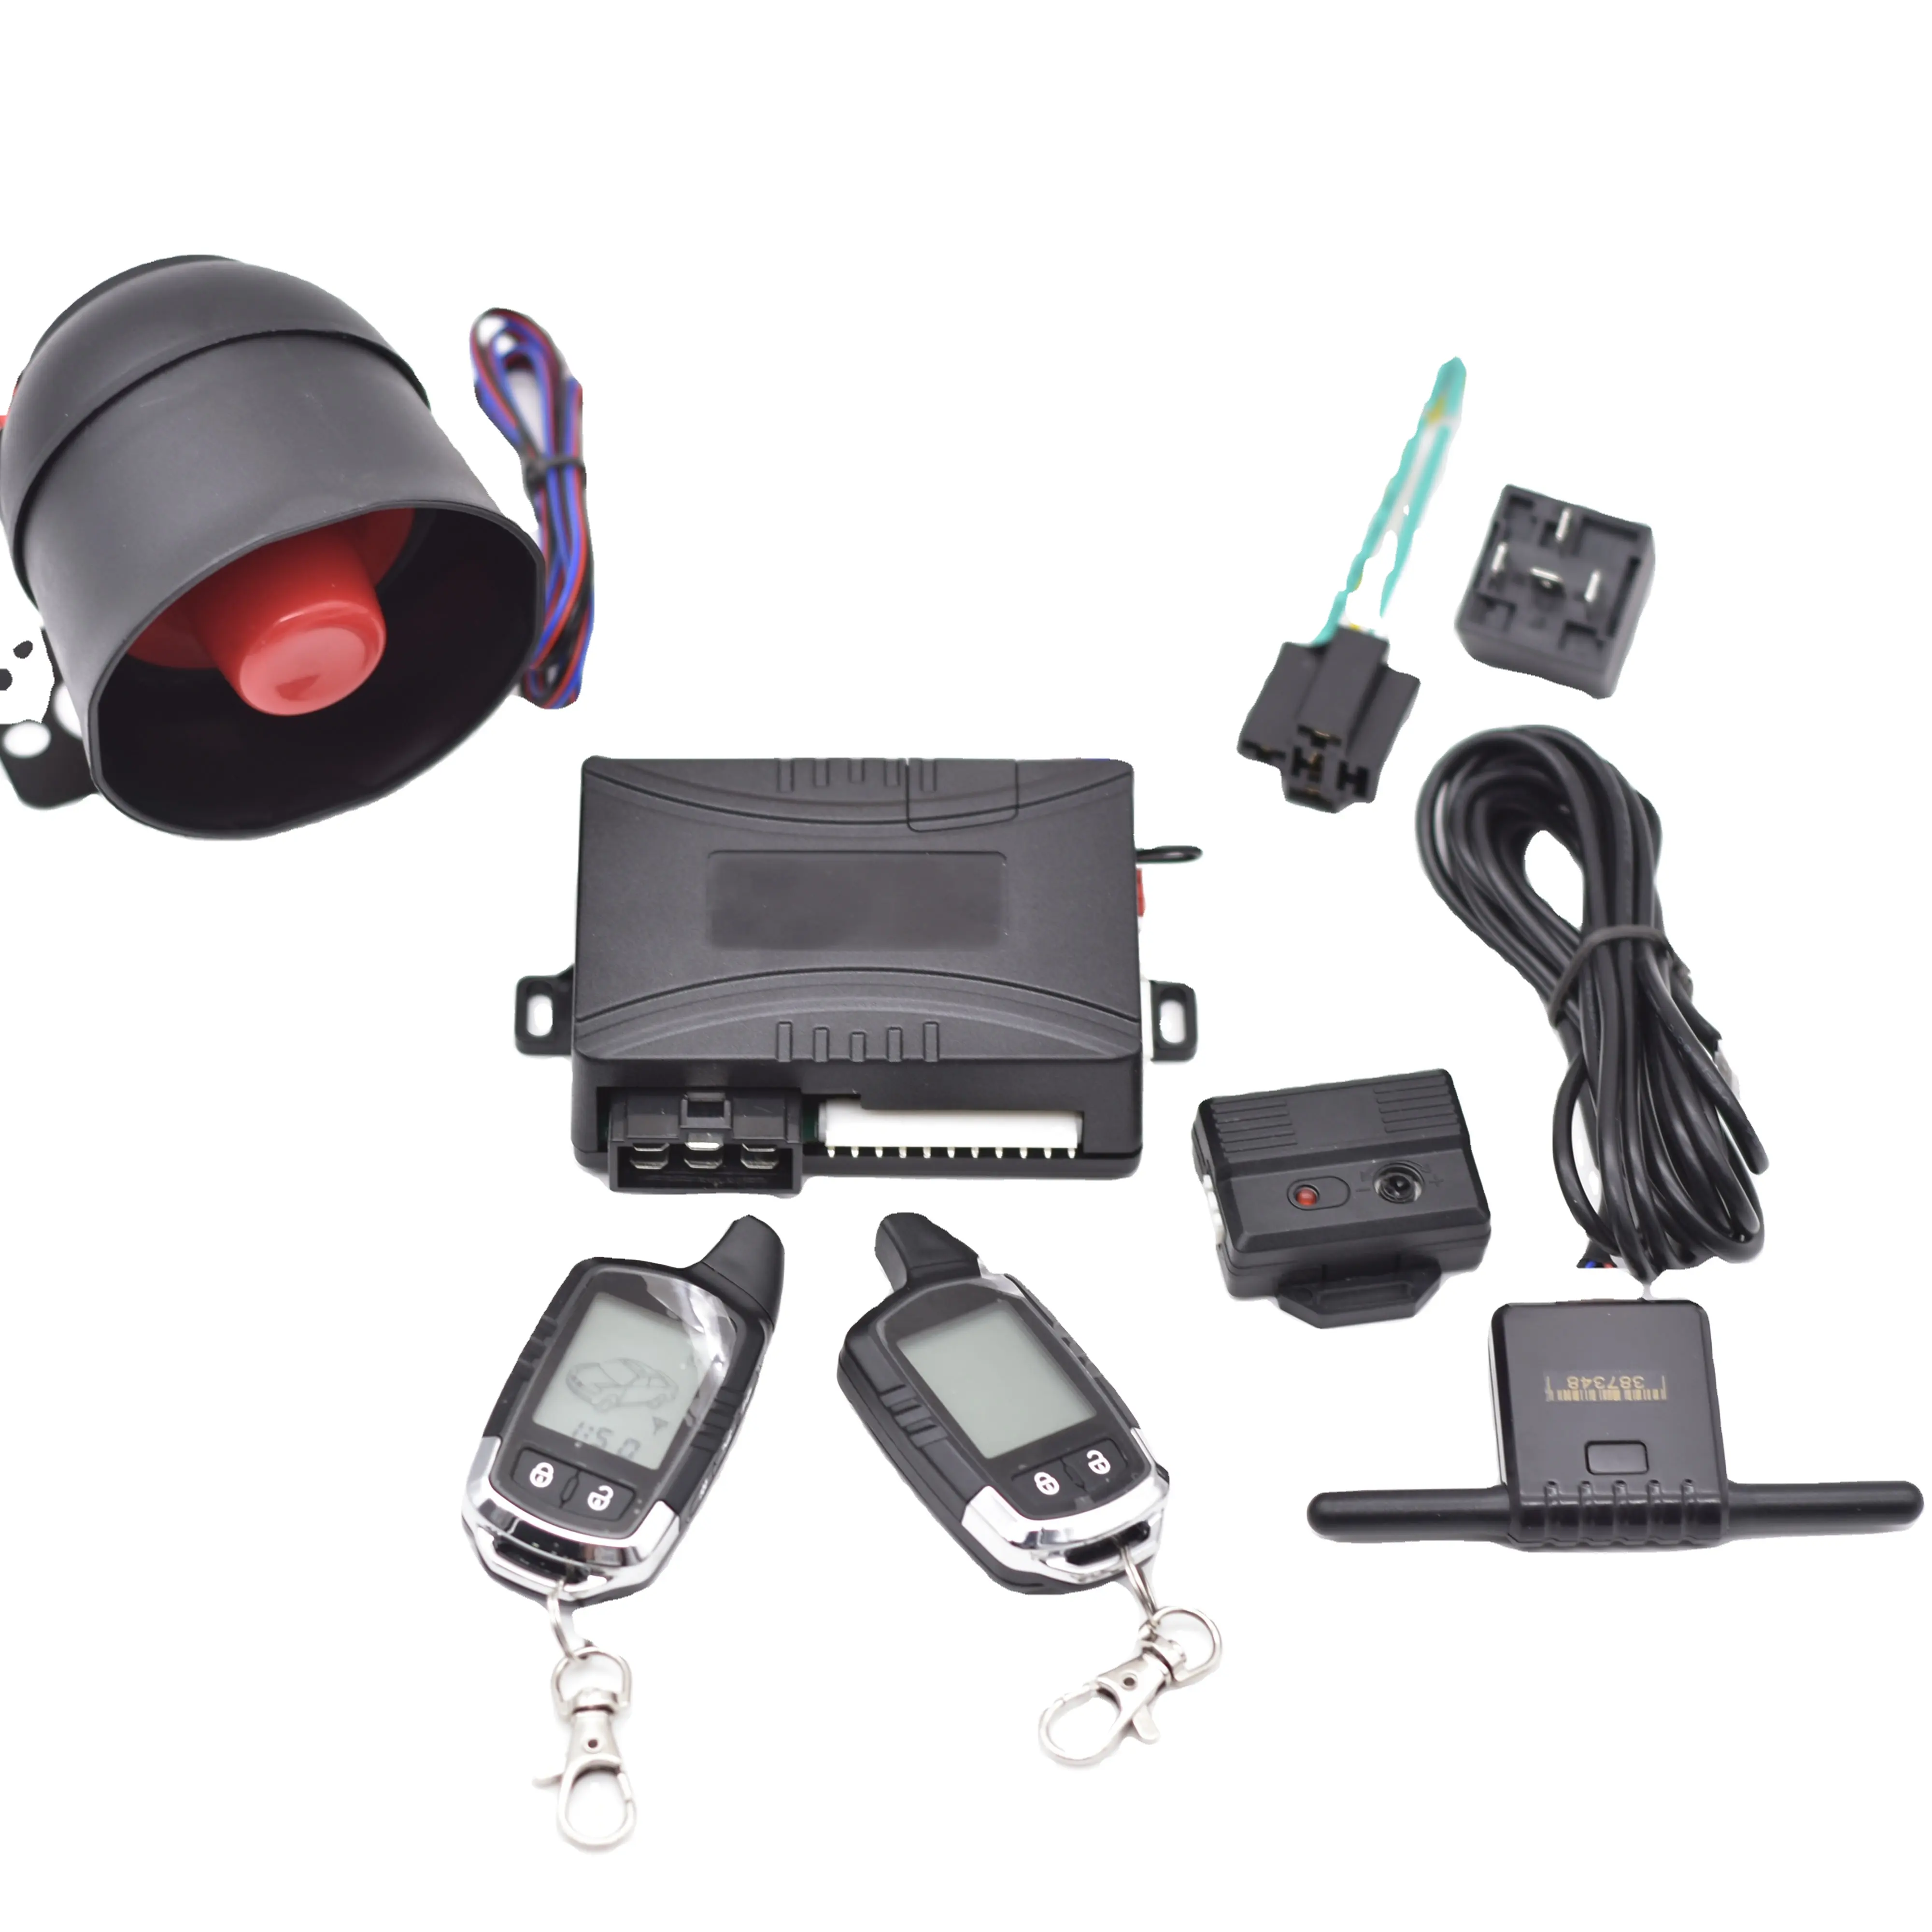 Sistema de alarma de coche bidireccional, arrancador remoto de vehículo Universal de alta calidad, 433,92hmz, barato